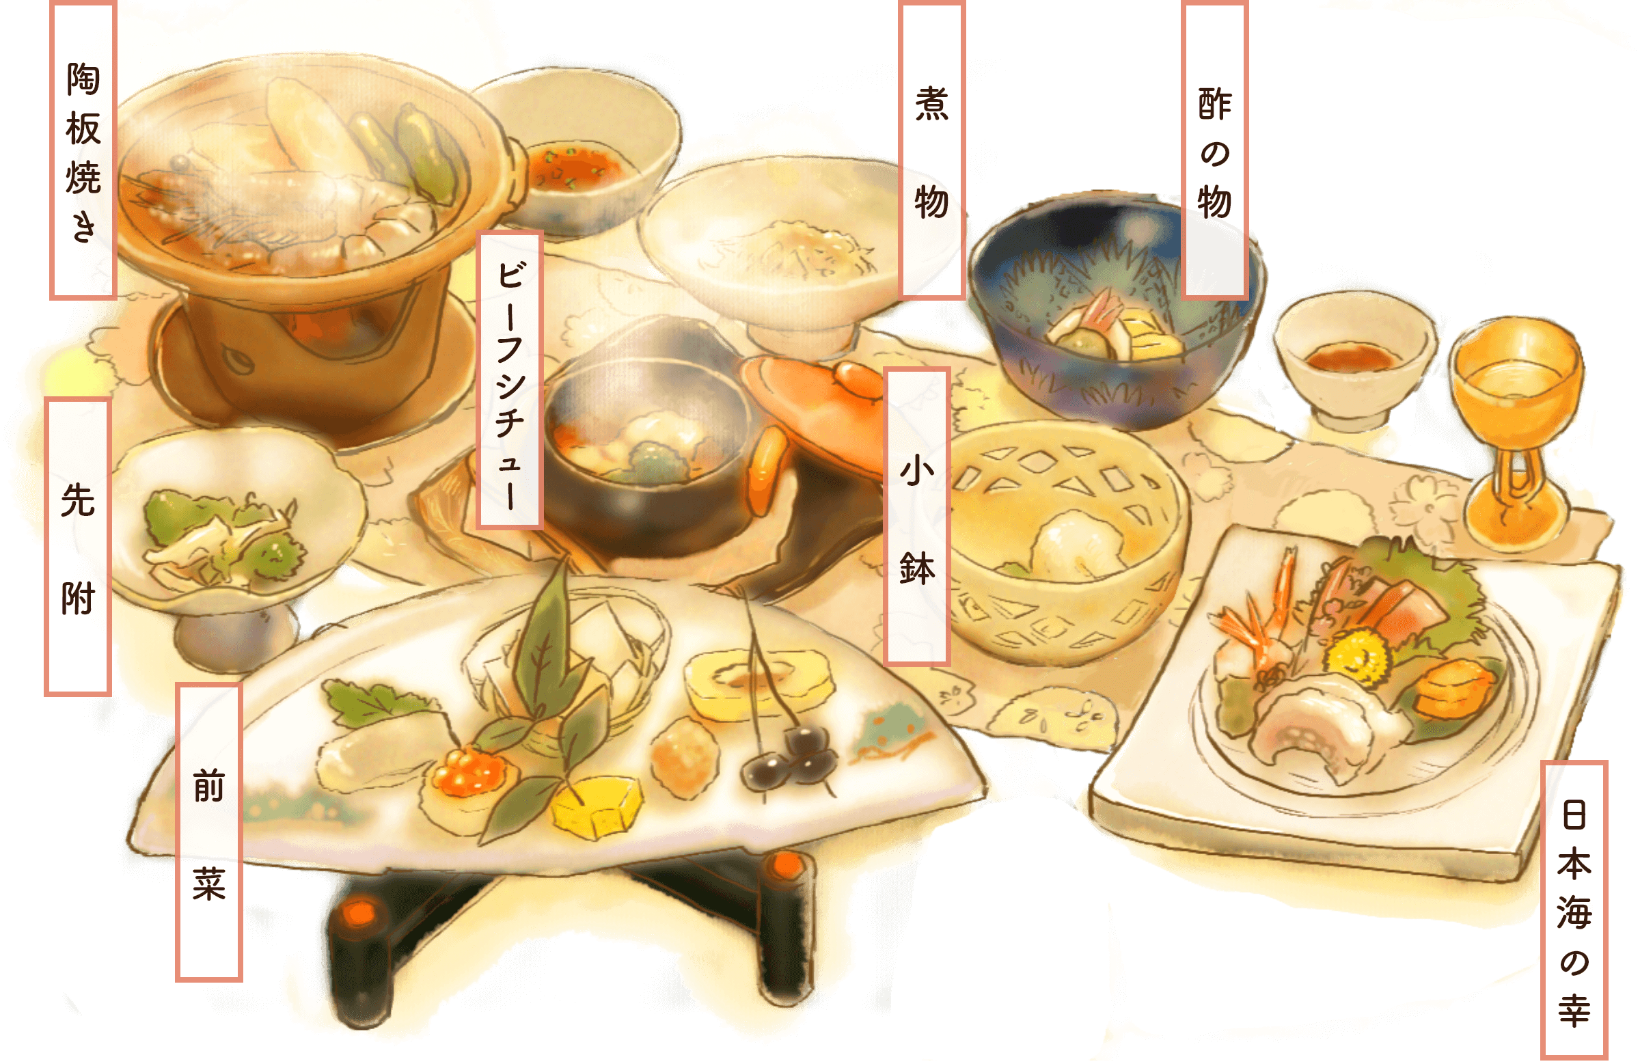 陶板焼き・煮物・酢の物・先附・ビーフシチュー・小鉢・日本海の幸のお刺身・前菜のイラスト